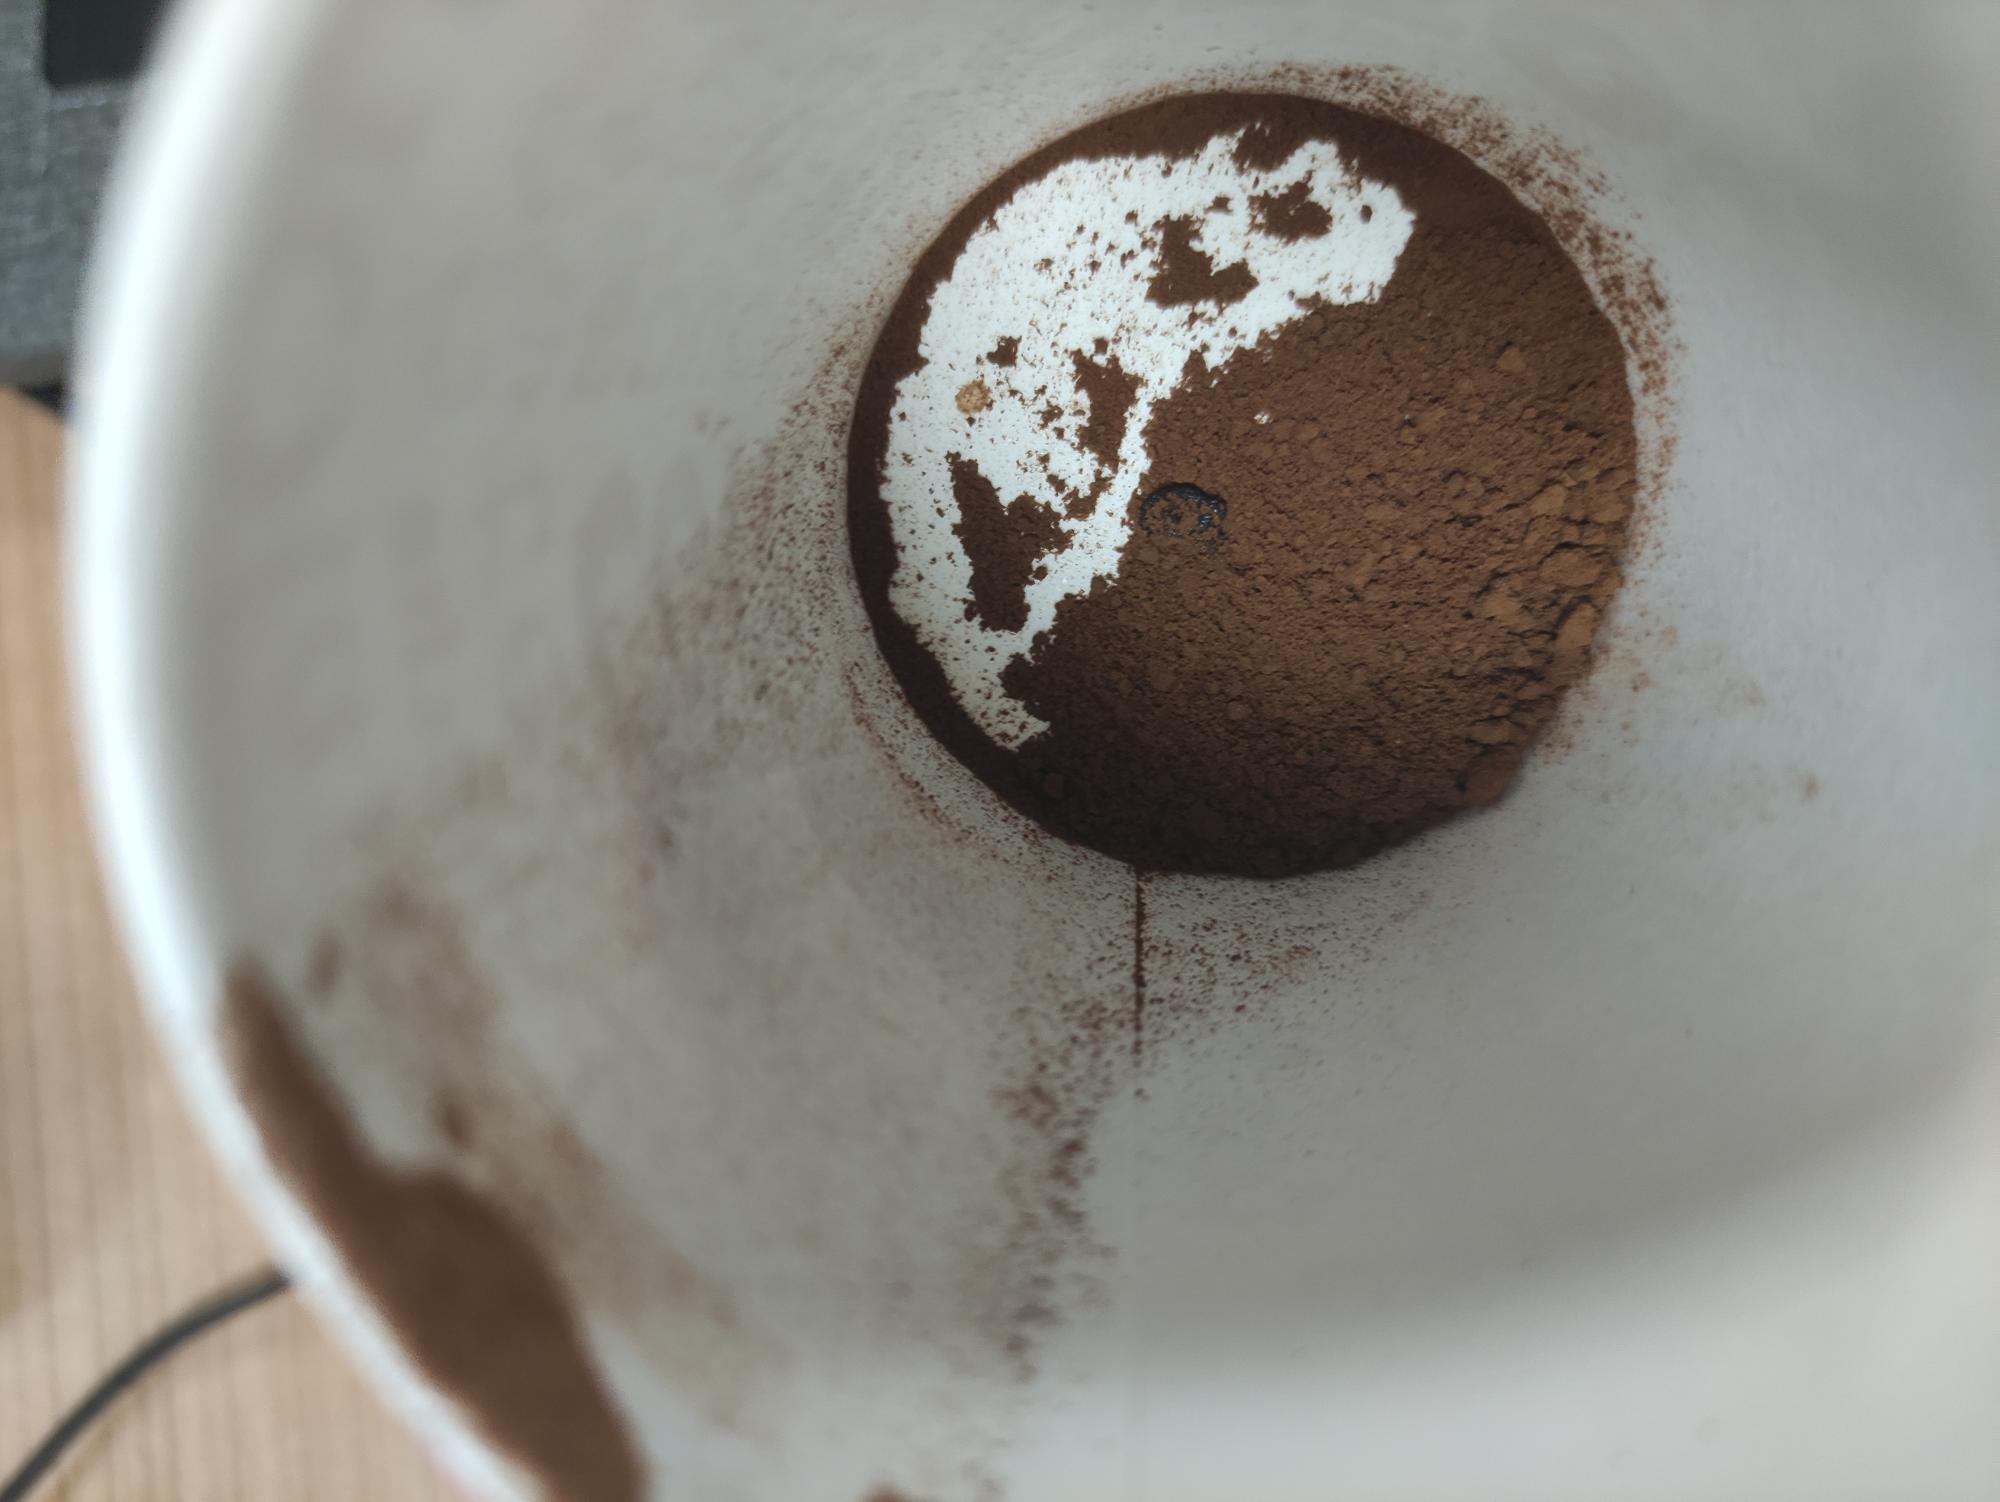 kahve dünyası marka kahvenin içinden siyah cisim çıktı Fotoğraf ile Şikayet | Fotoğraf ile İfşa Et - 2 